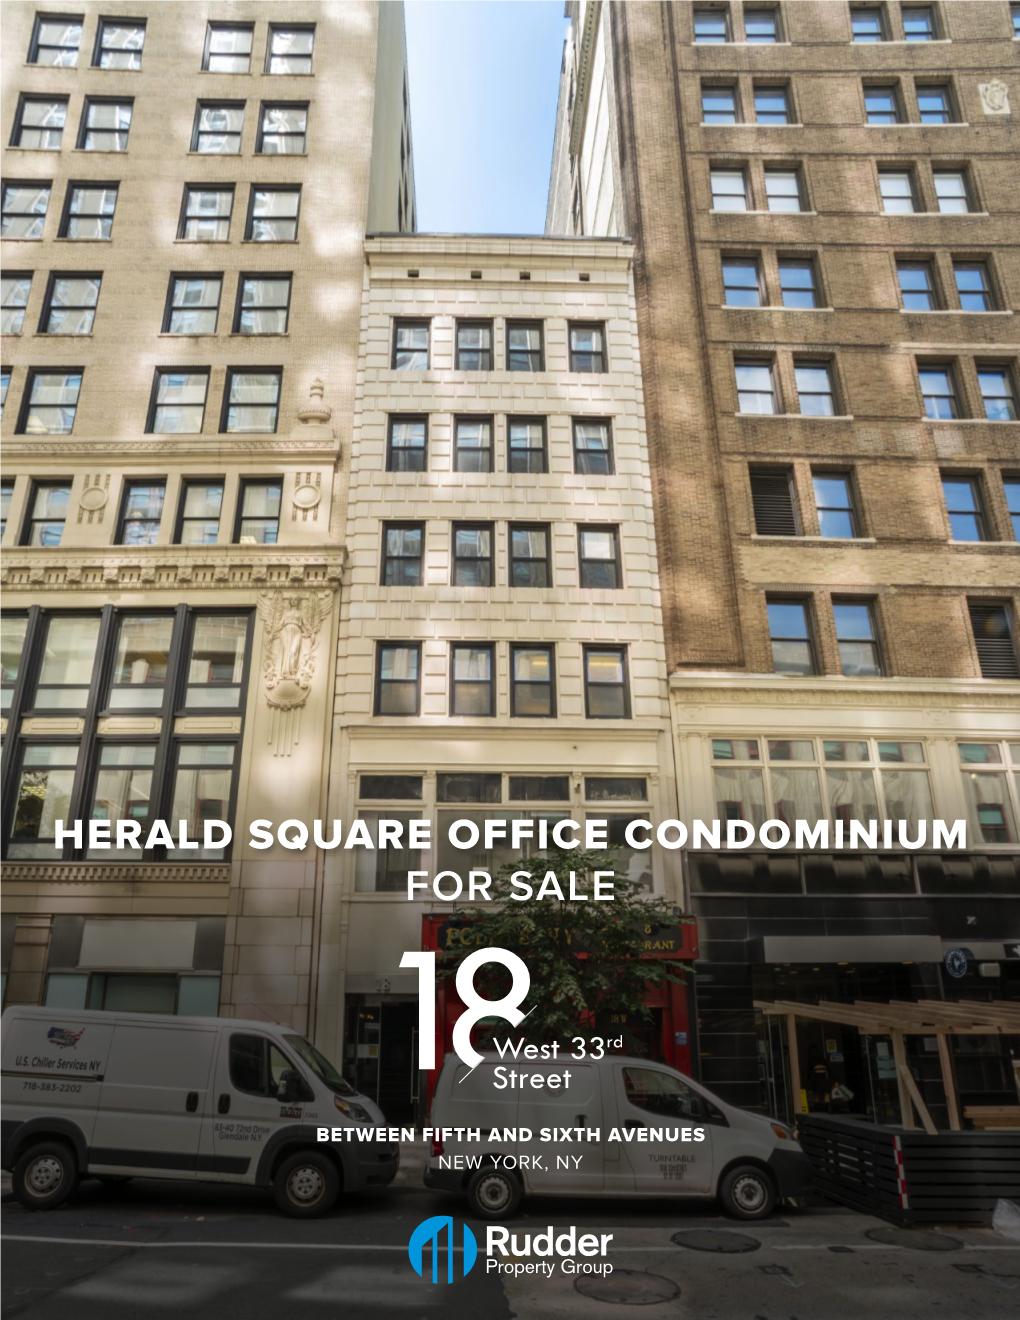 Herald Square Office Condominium for Sale